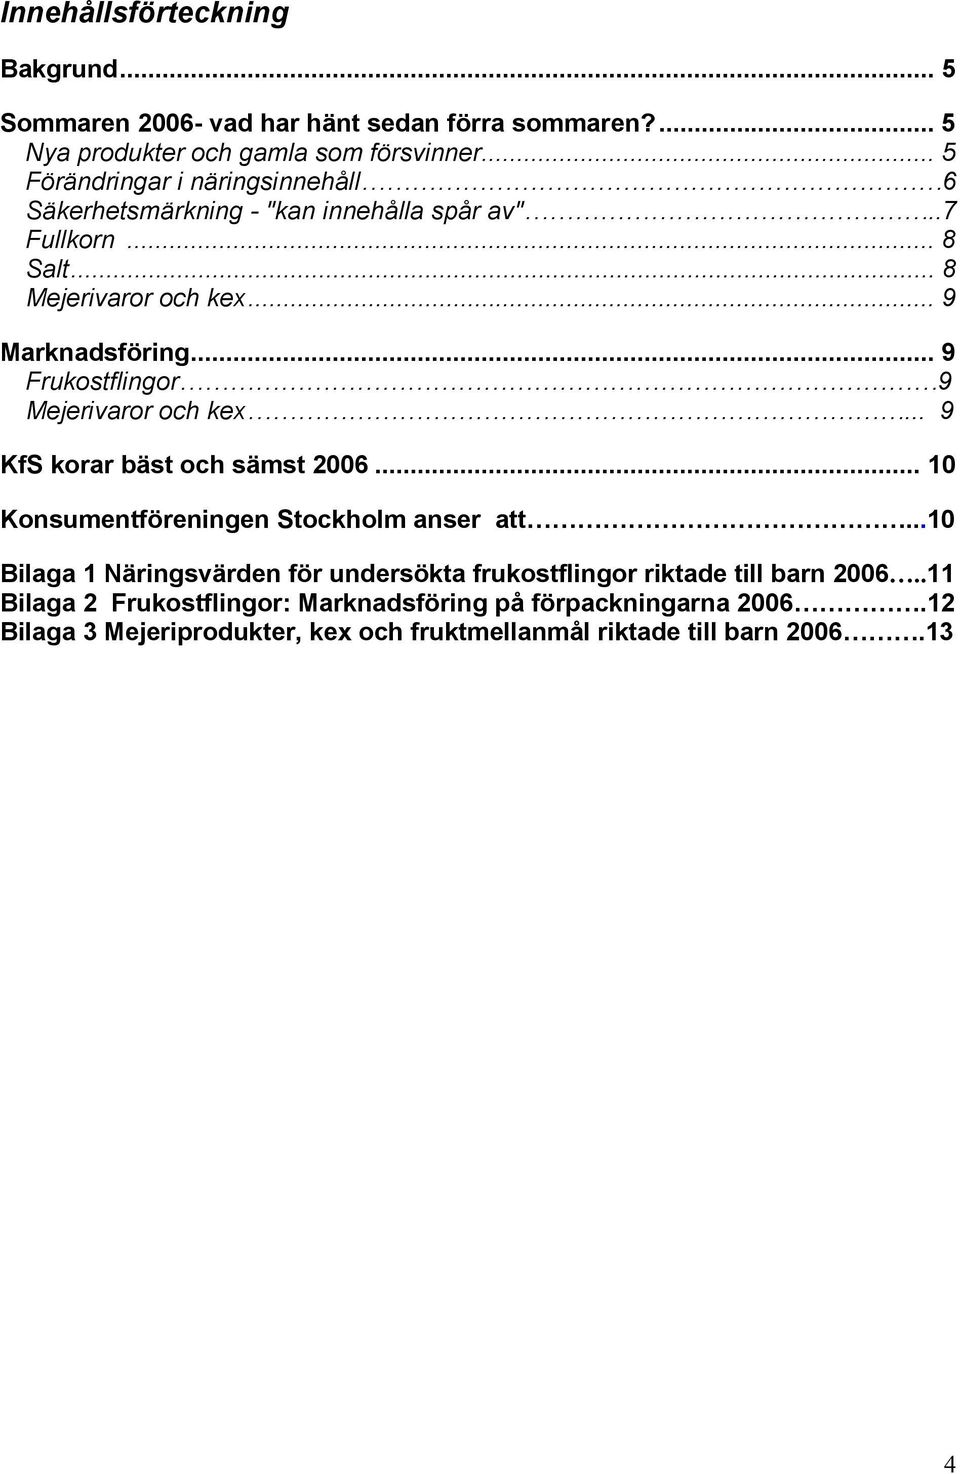 .. 9 Frukostflingor 9 Mejerivaror och kex... 9 KfS korar bäst och sämst 2006... 10 Konsumentföreningen Stockholm anser att.